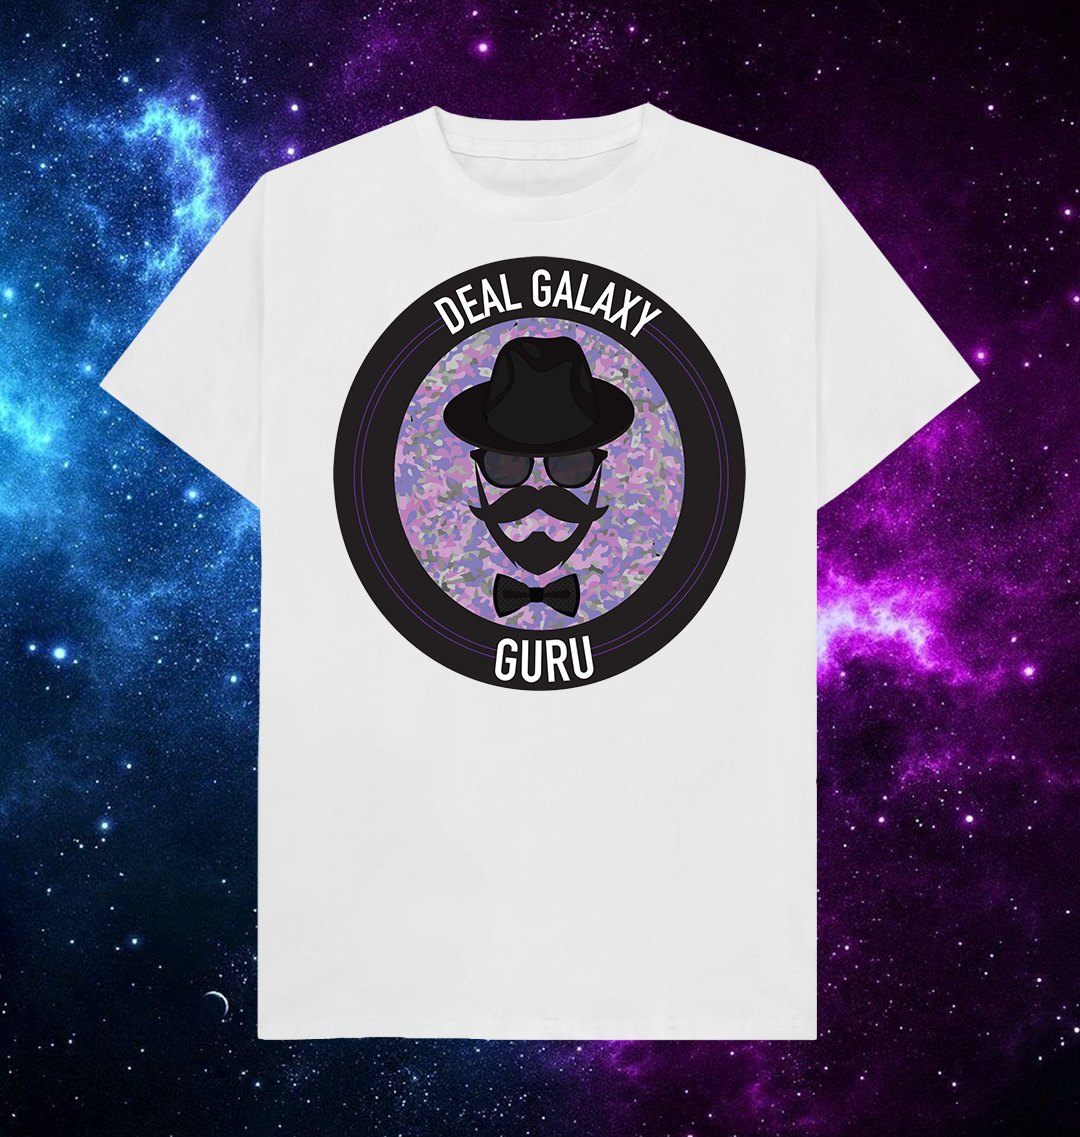 Deal Galaxy Guru by Manuel De Donato Artist T-Shirt